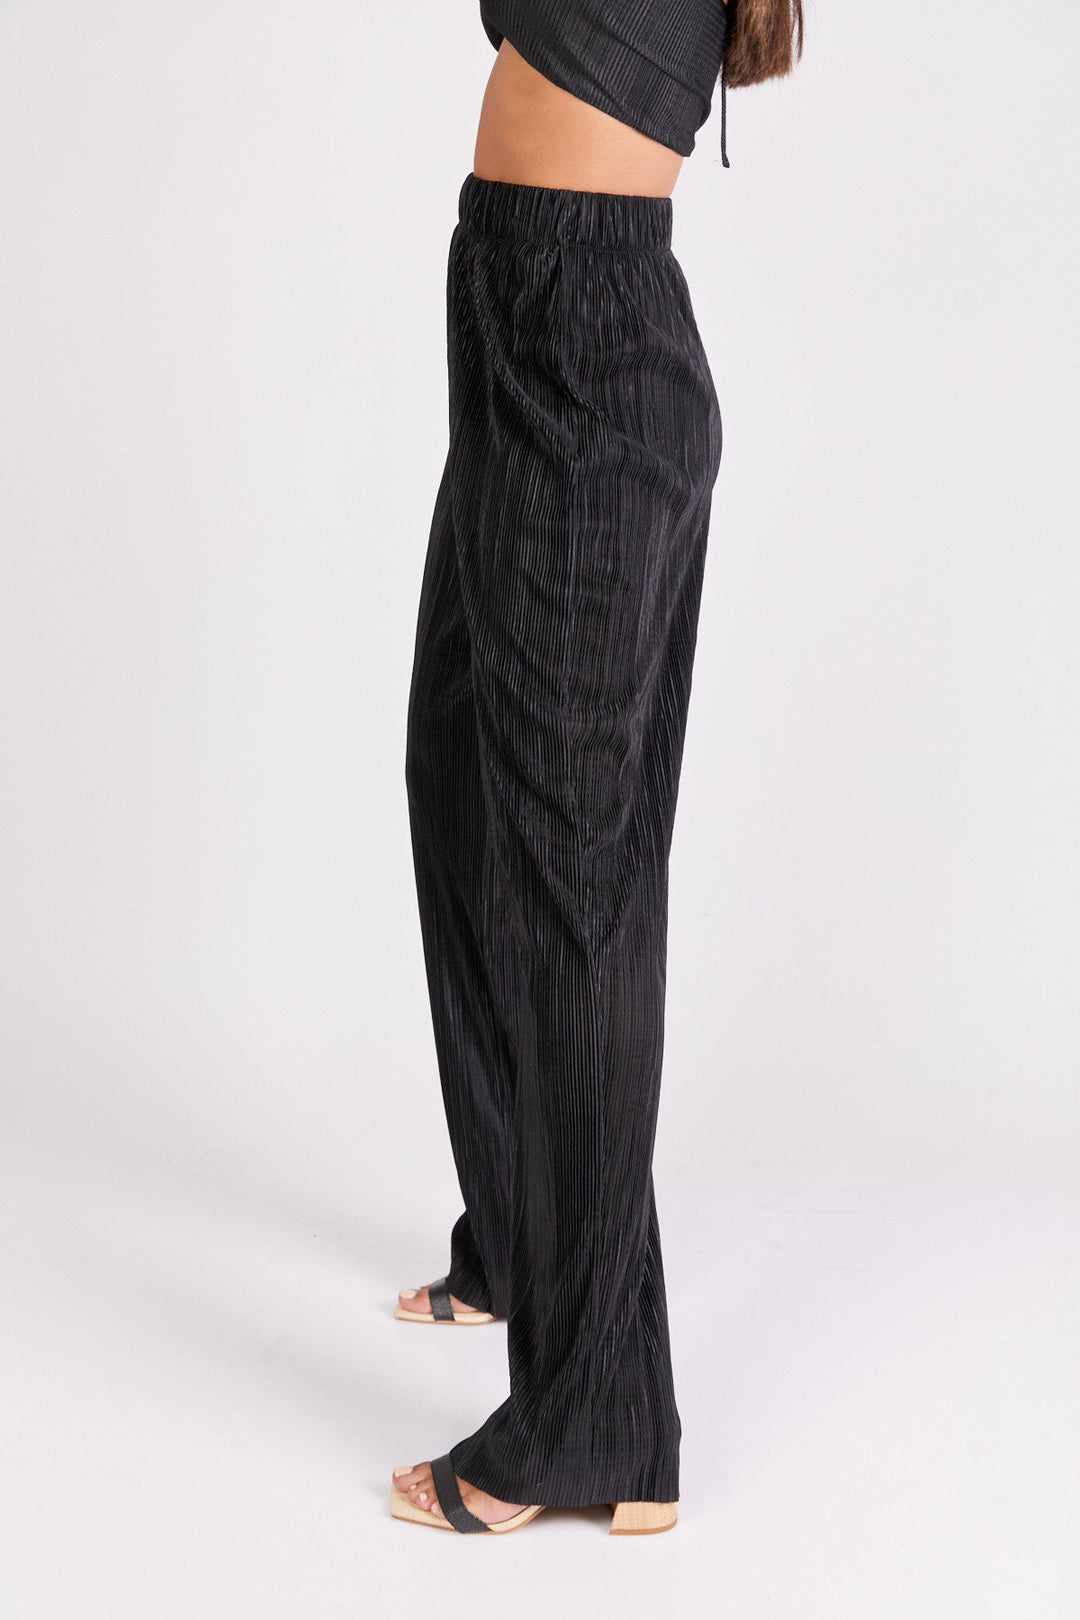 מכנסי קואצ'לה בצבע שחור לורקס - Neta Efrati